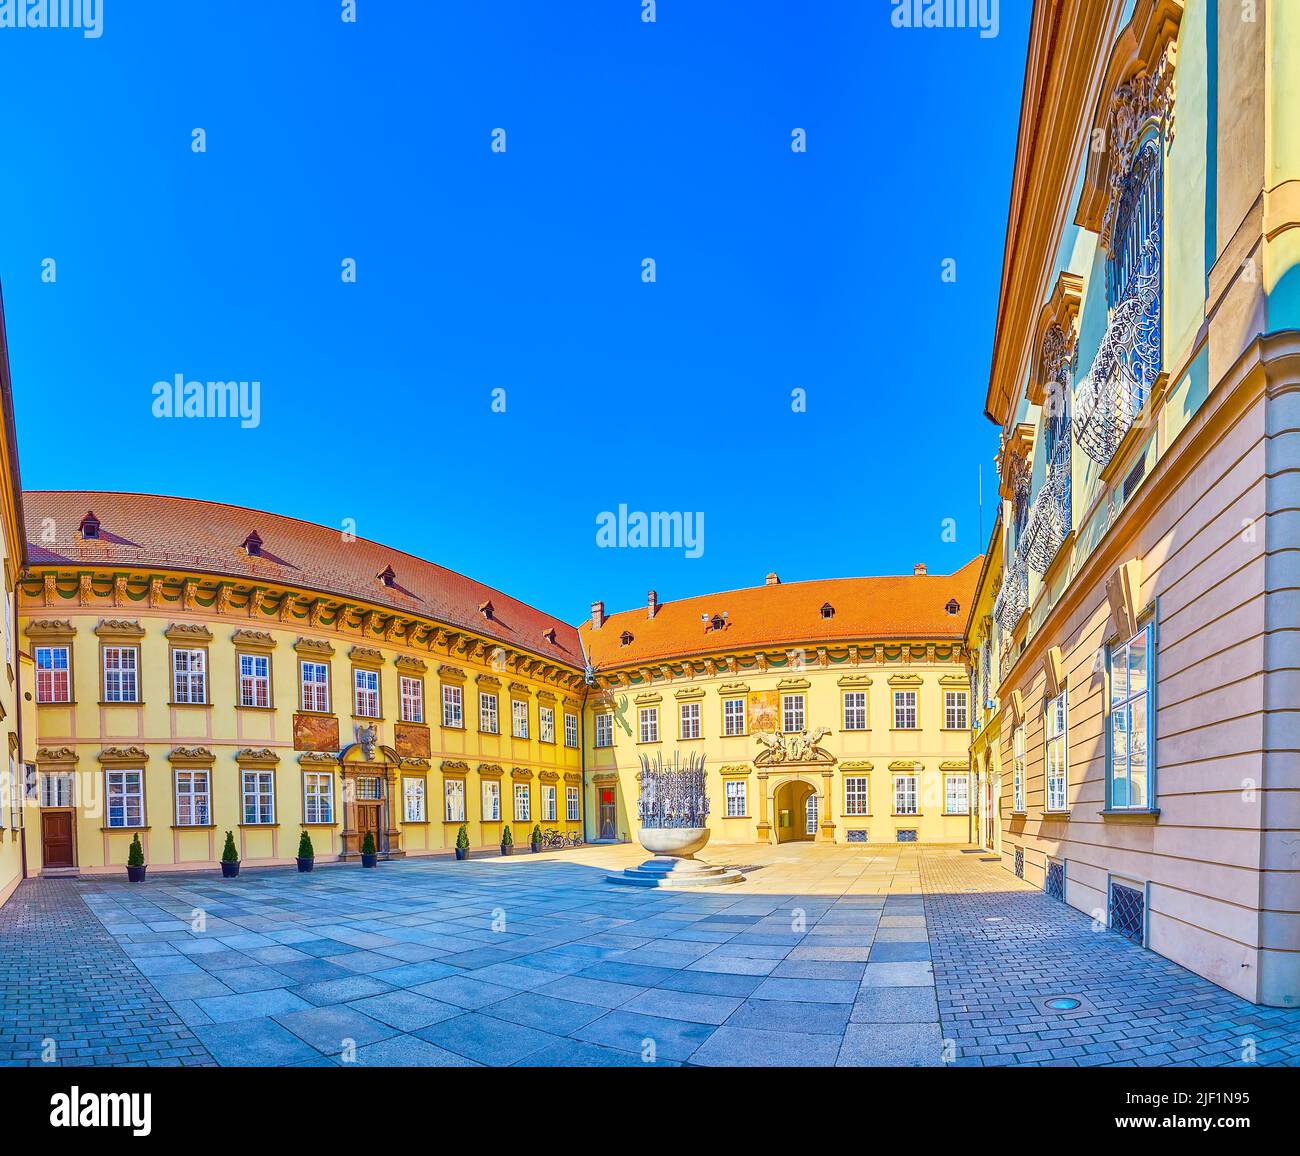 La grande cour de Nova Radnice (nouvel hôtel de ville) de Brno, République tchèque Banque D'Images